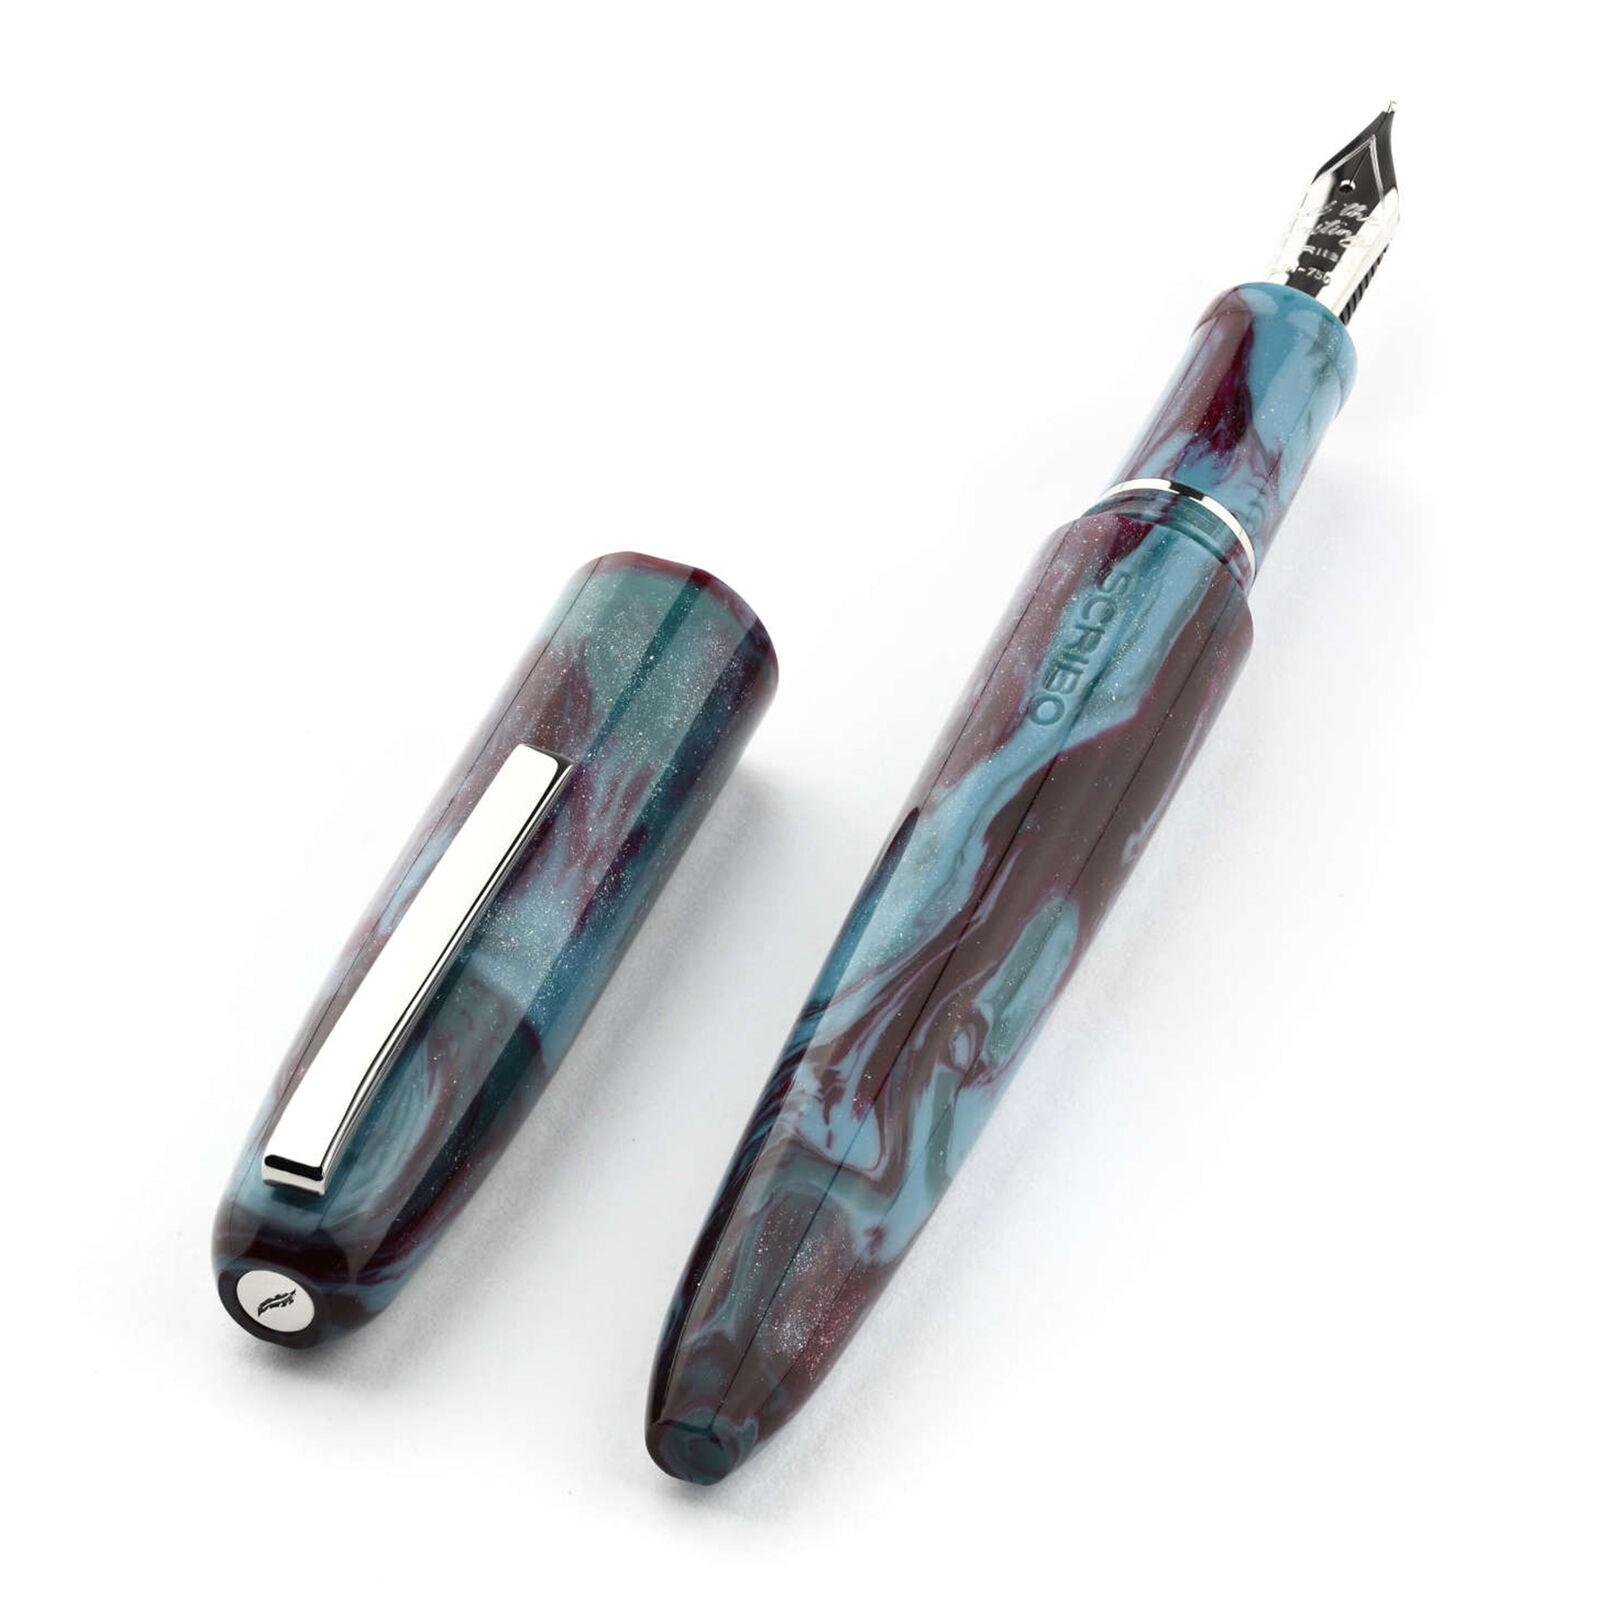 Scribo Piuma Fountain Pen in Fusione Diamondcast 18kt Gold Nib - Extra Fine Nib